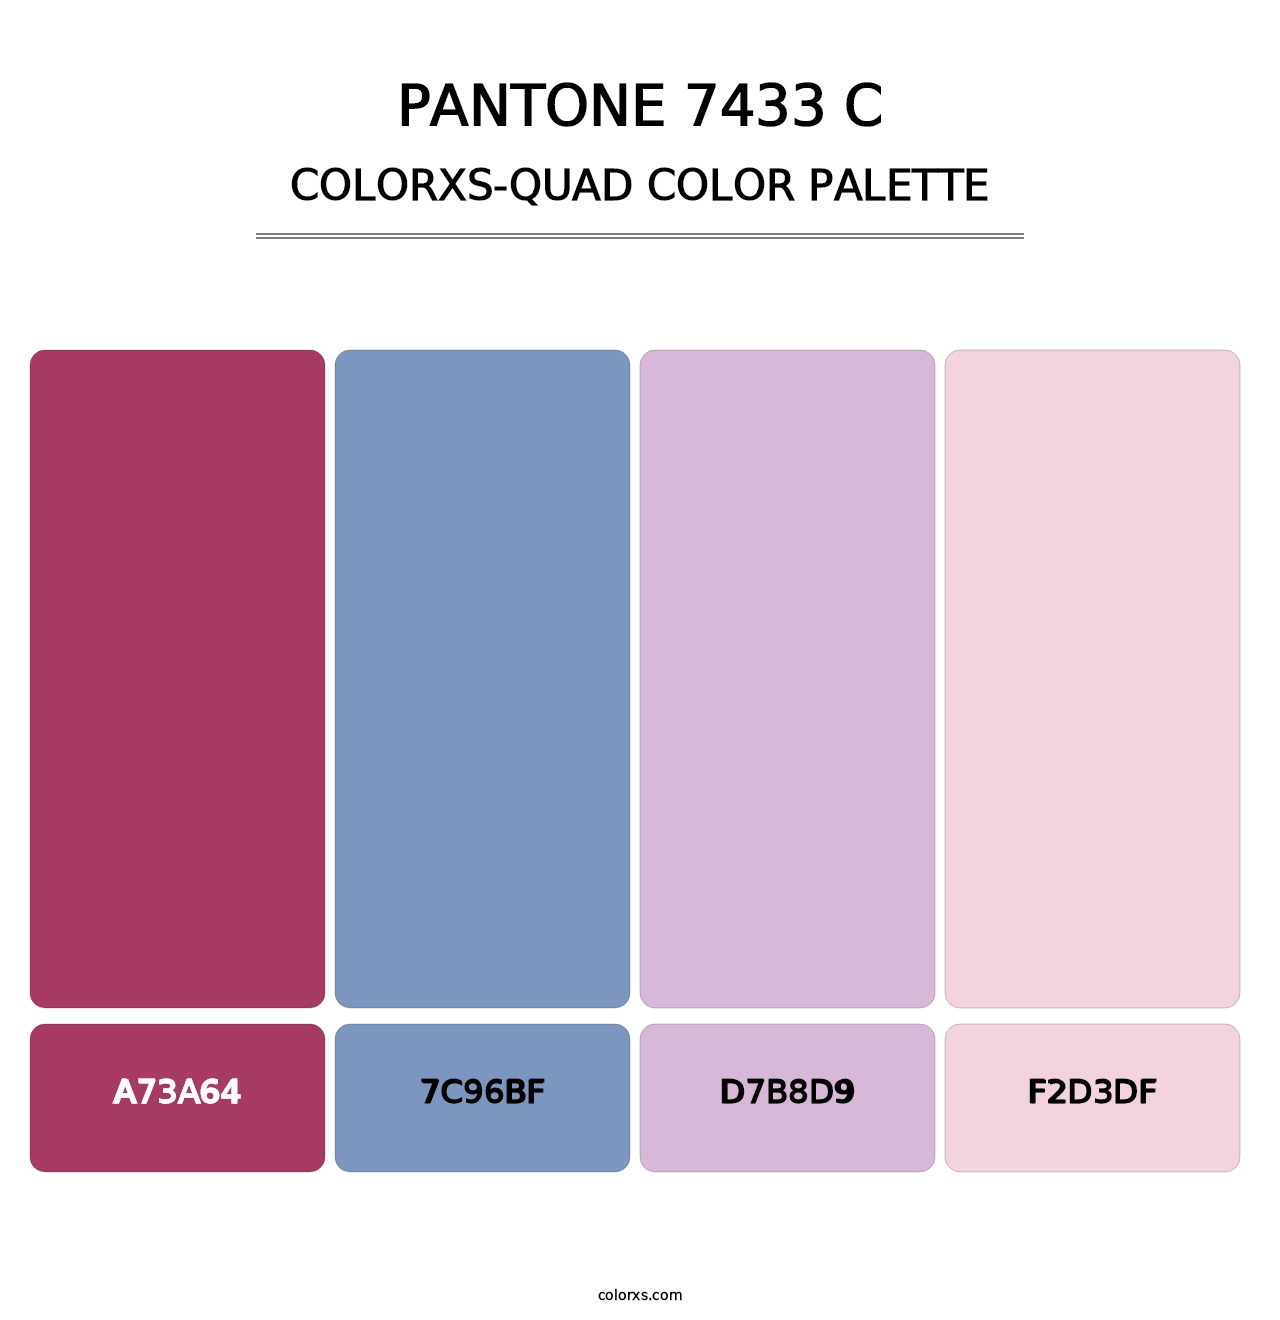 PANTONE 7433 C - Colorxs Quad Palette